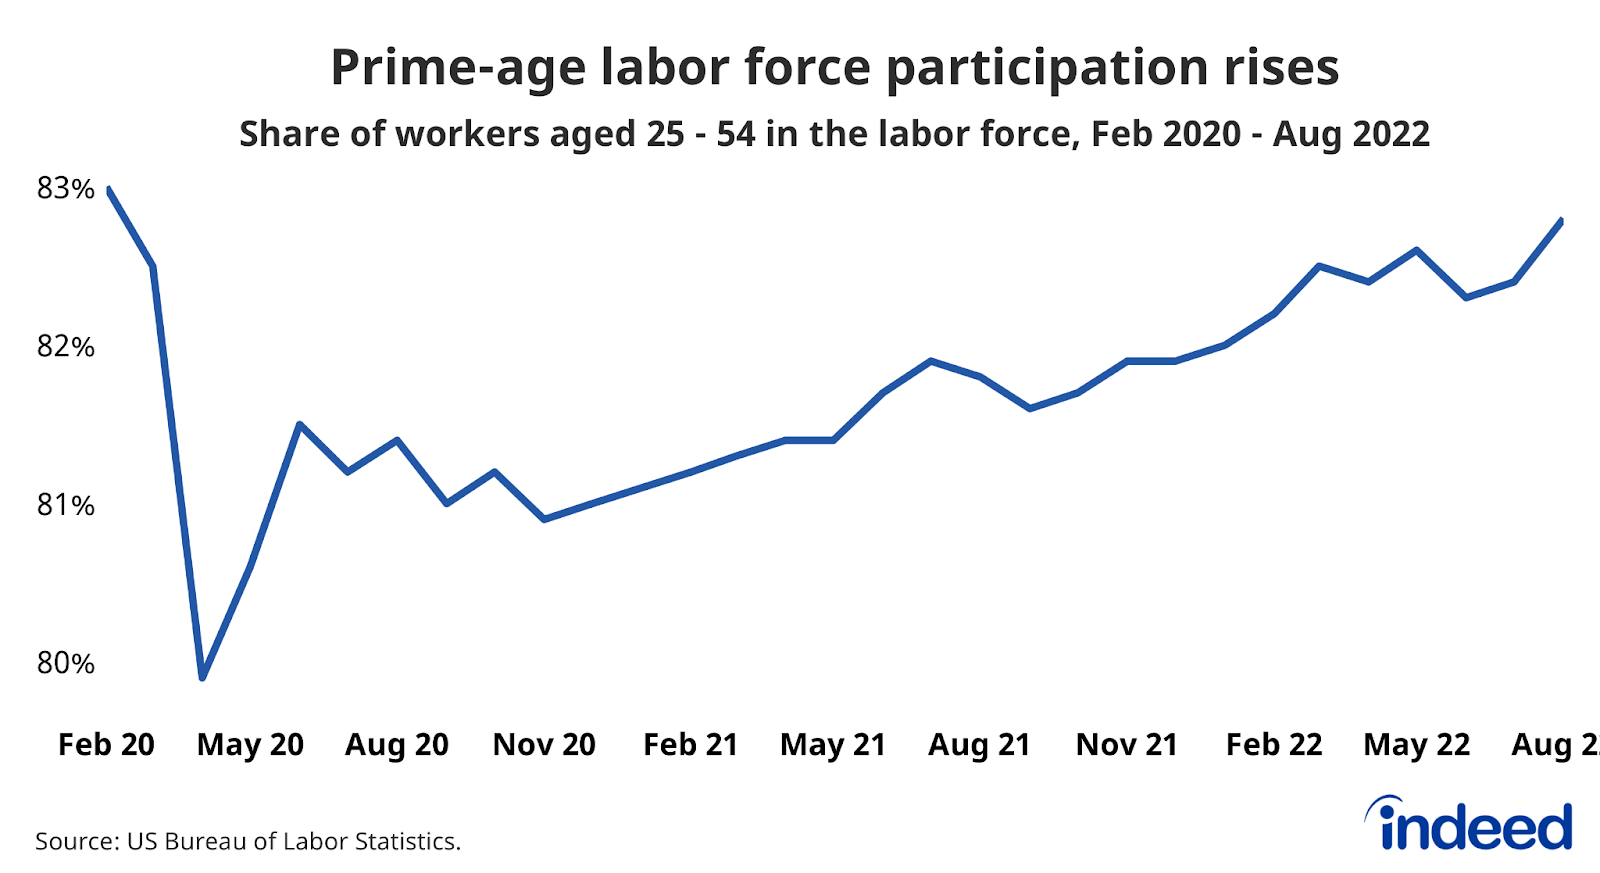 A line chart entitled “Prime-age labor force participation rate rises